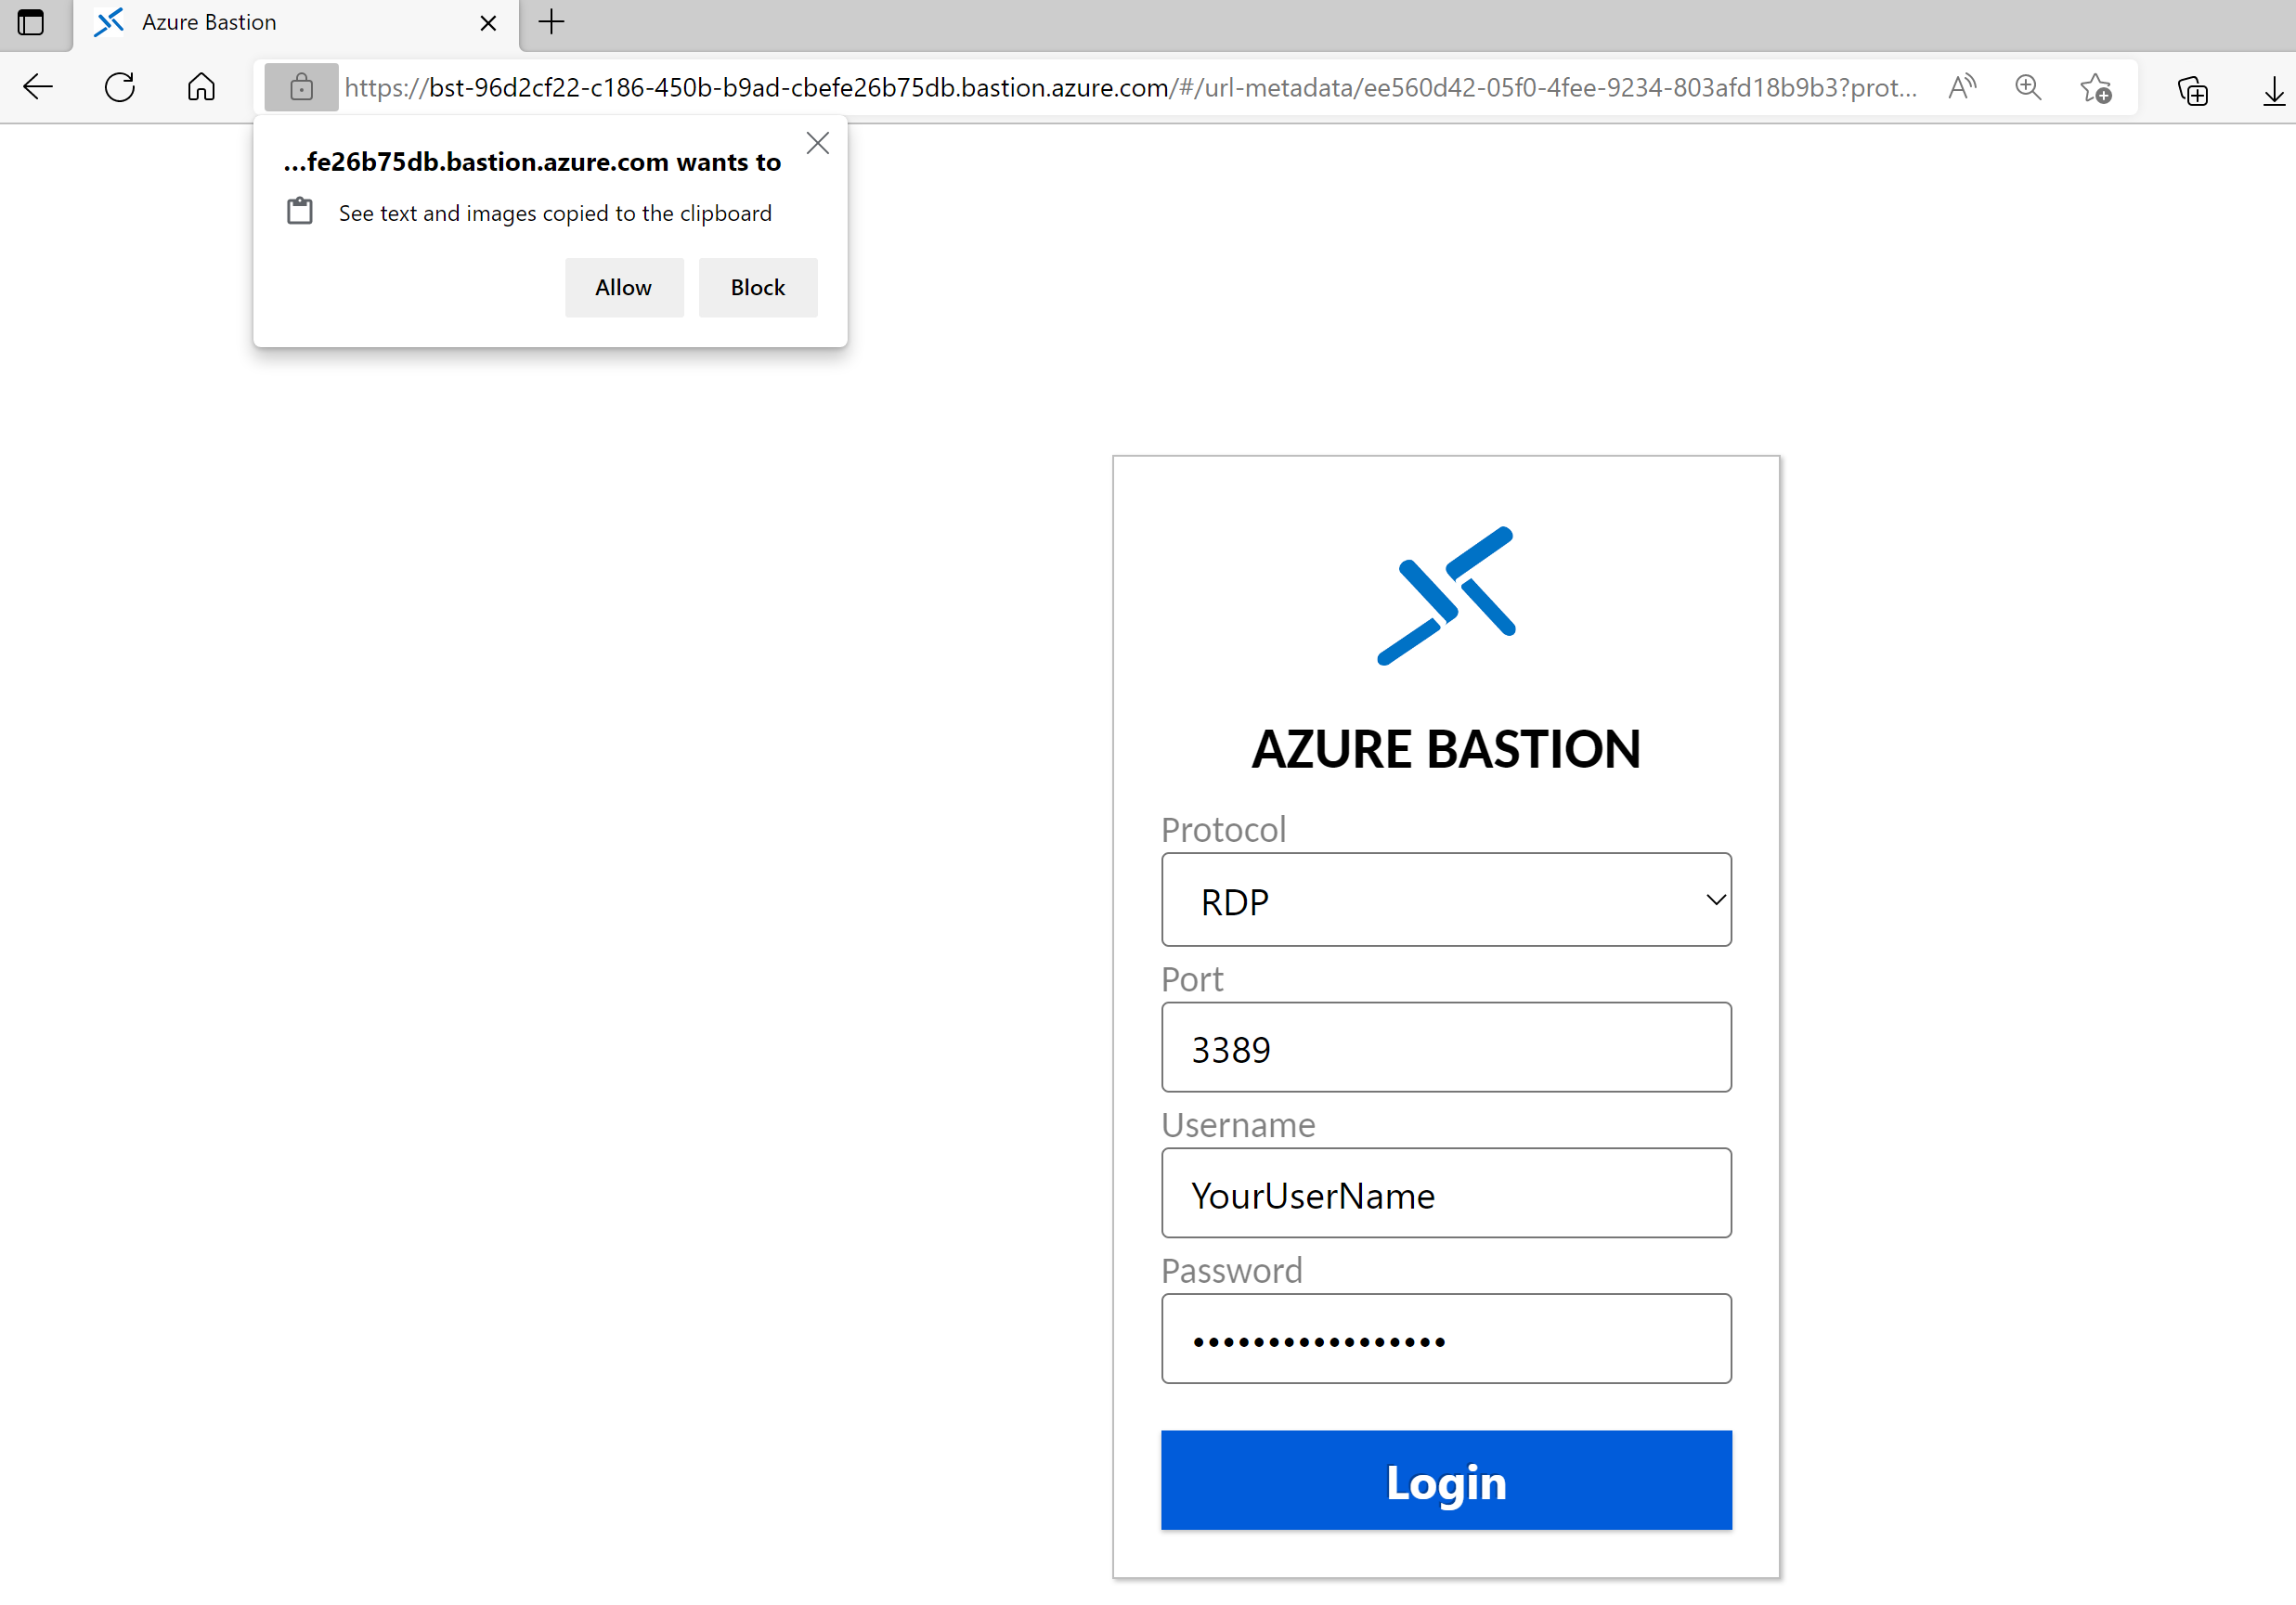 لقطة شاشة لتسجيل الدخول إلى bastion باستخدام الارتباط القابل للمشاركة في المستعرض.